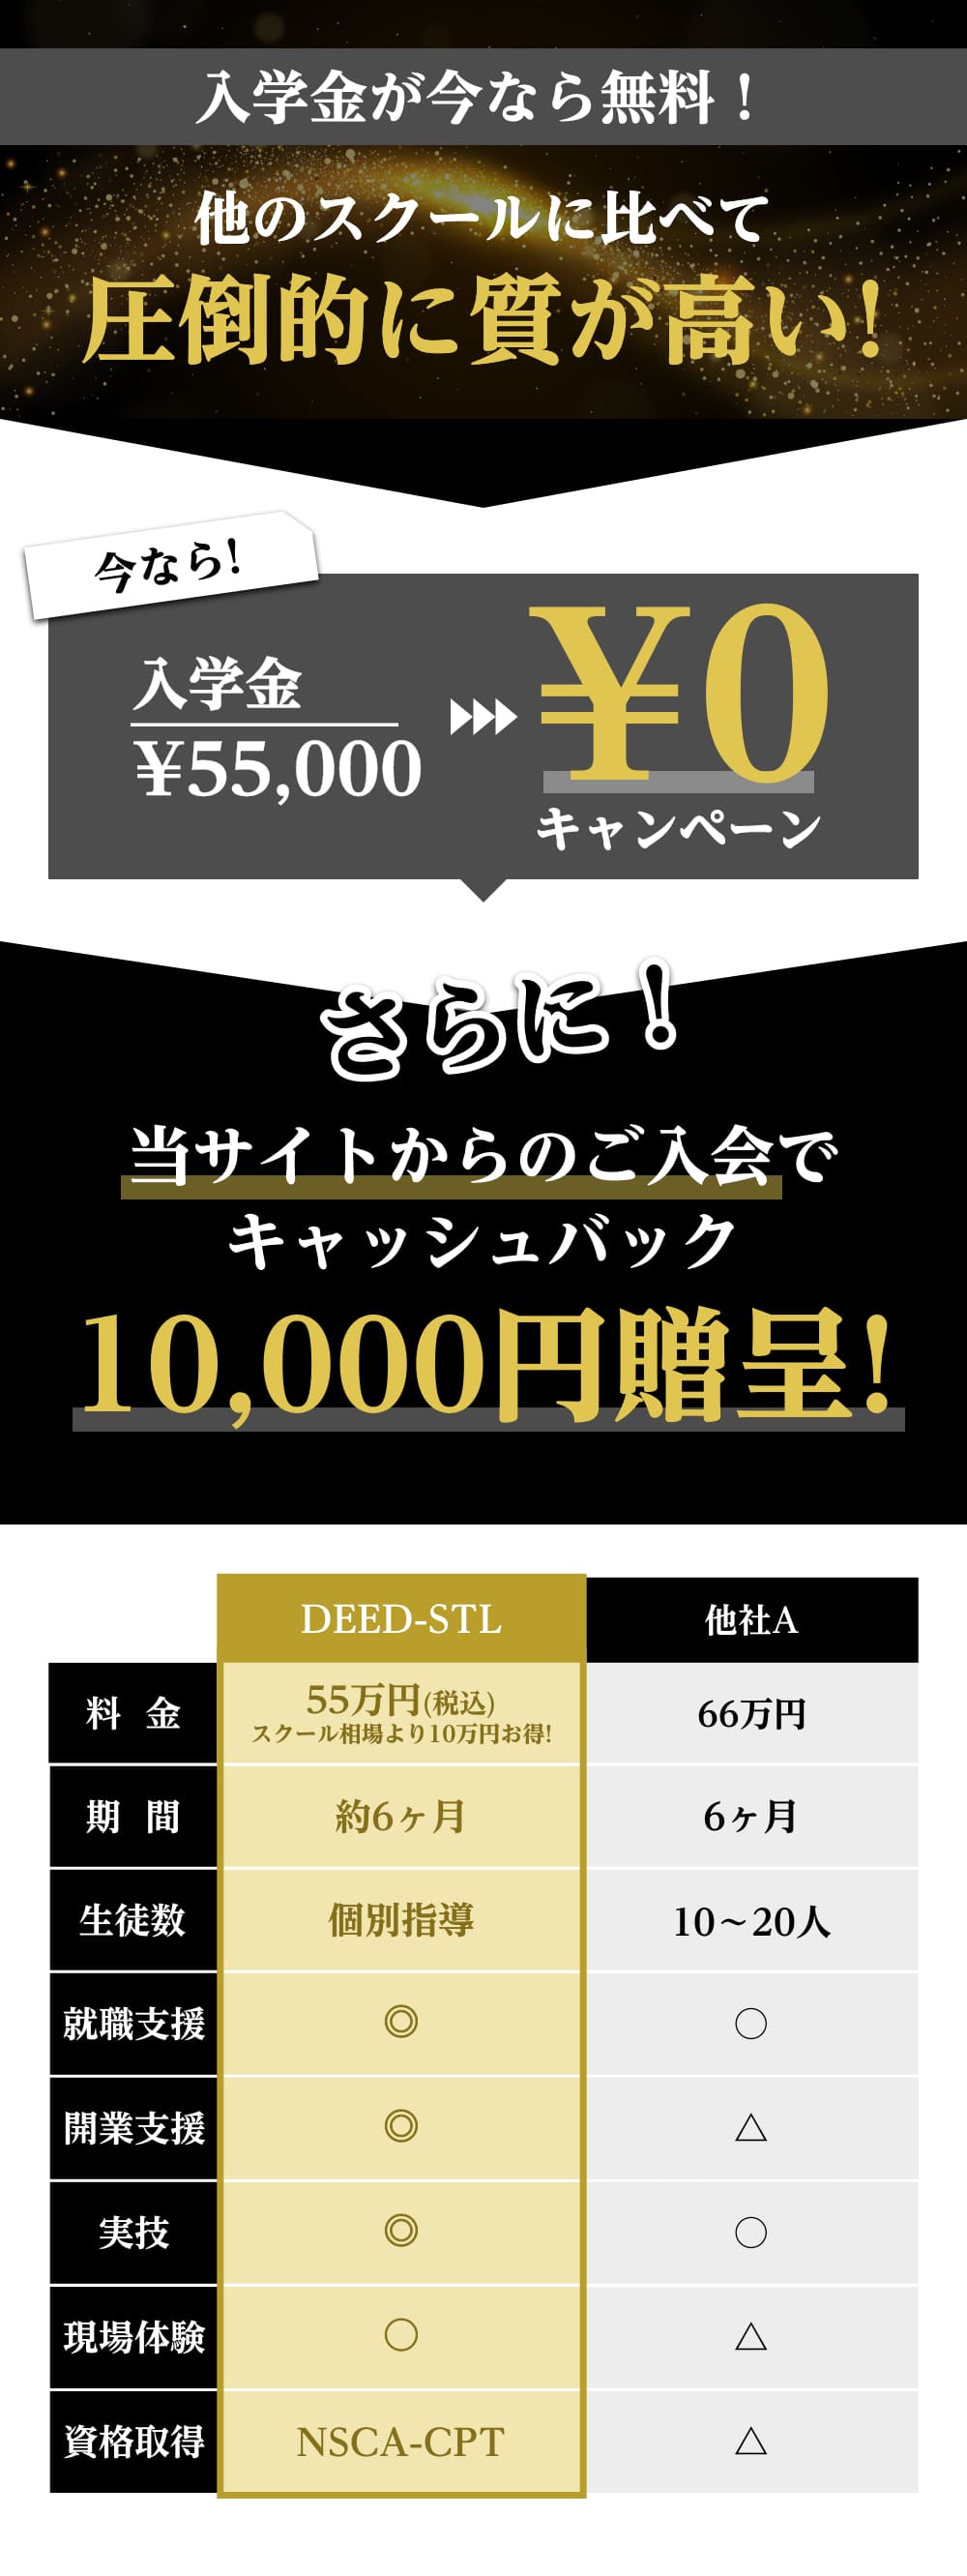 今なら入学金¥55,000→¥0キャンペーン さらに！当サイトからのご入会でキャッシュバック10,000円